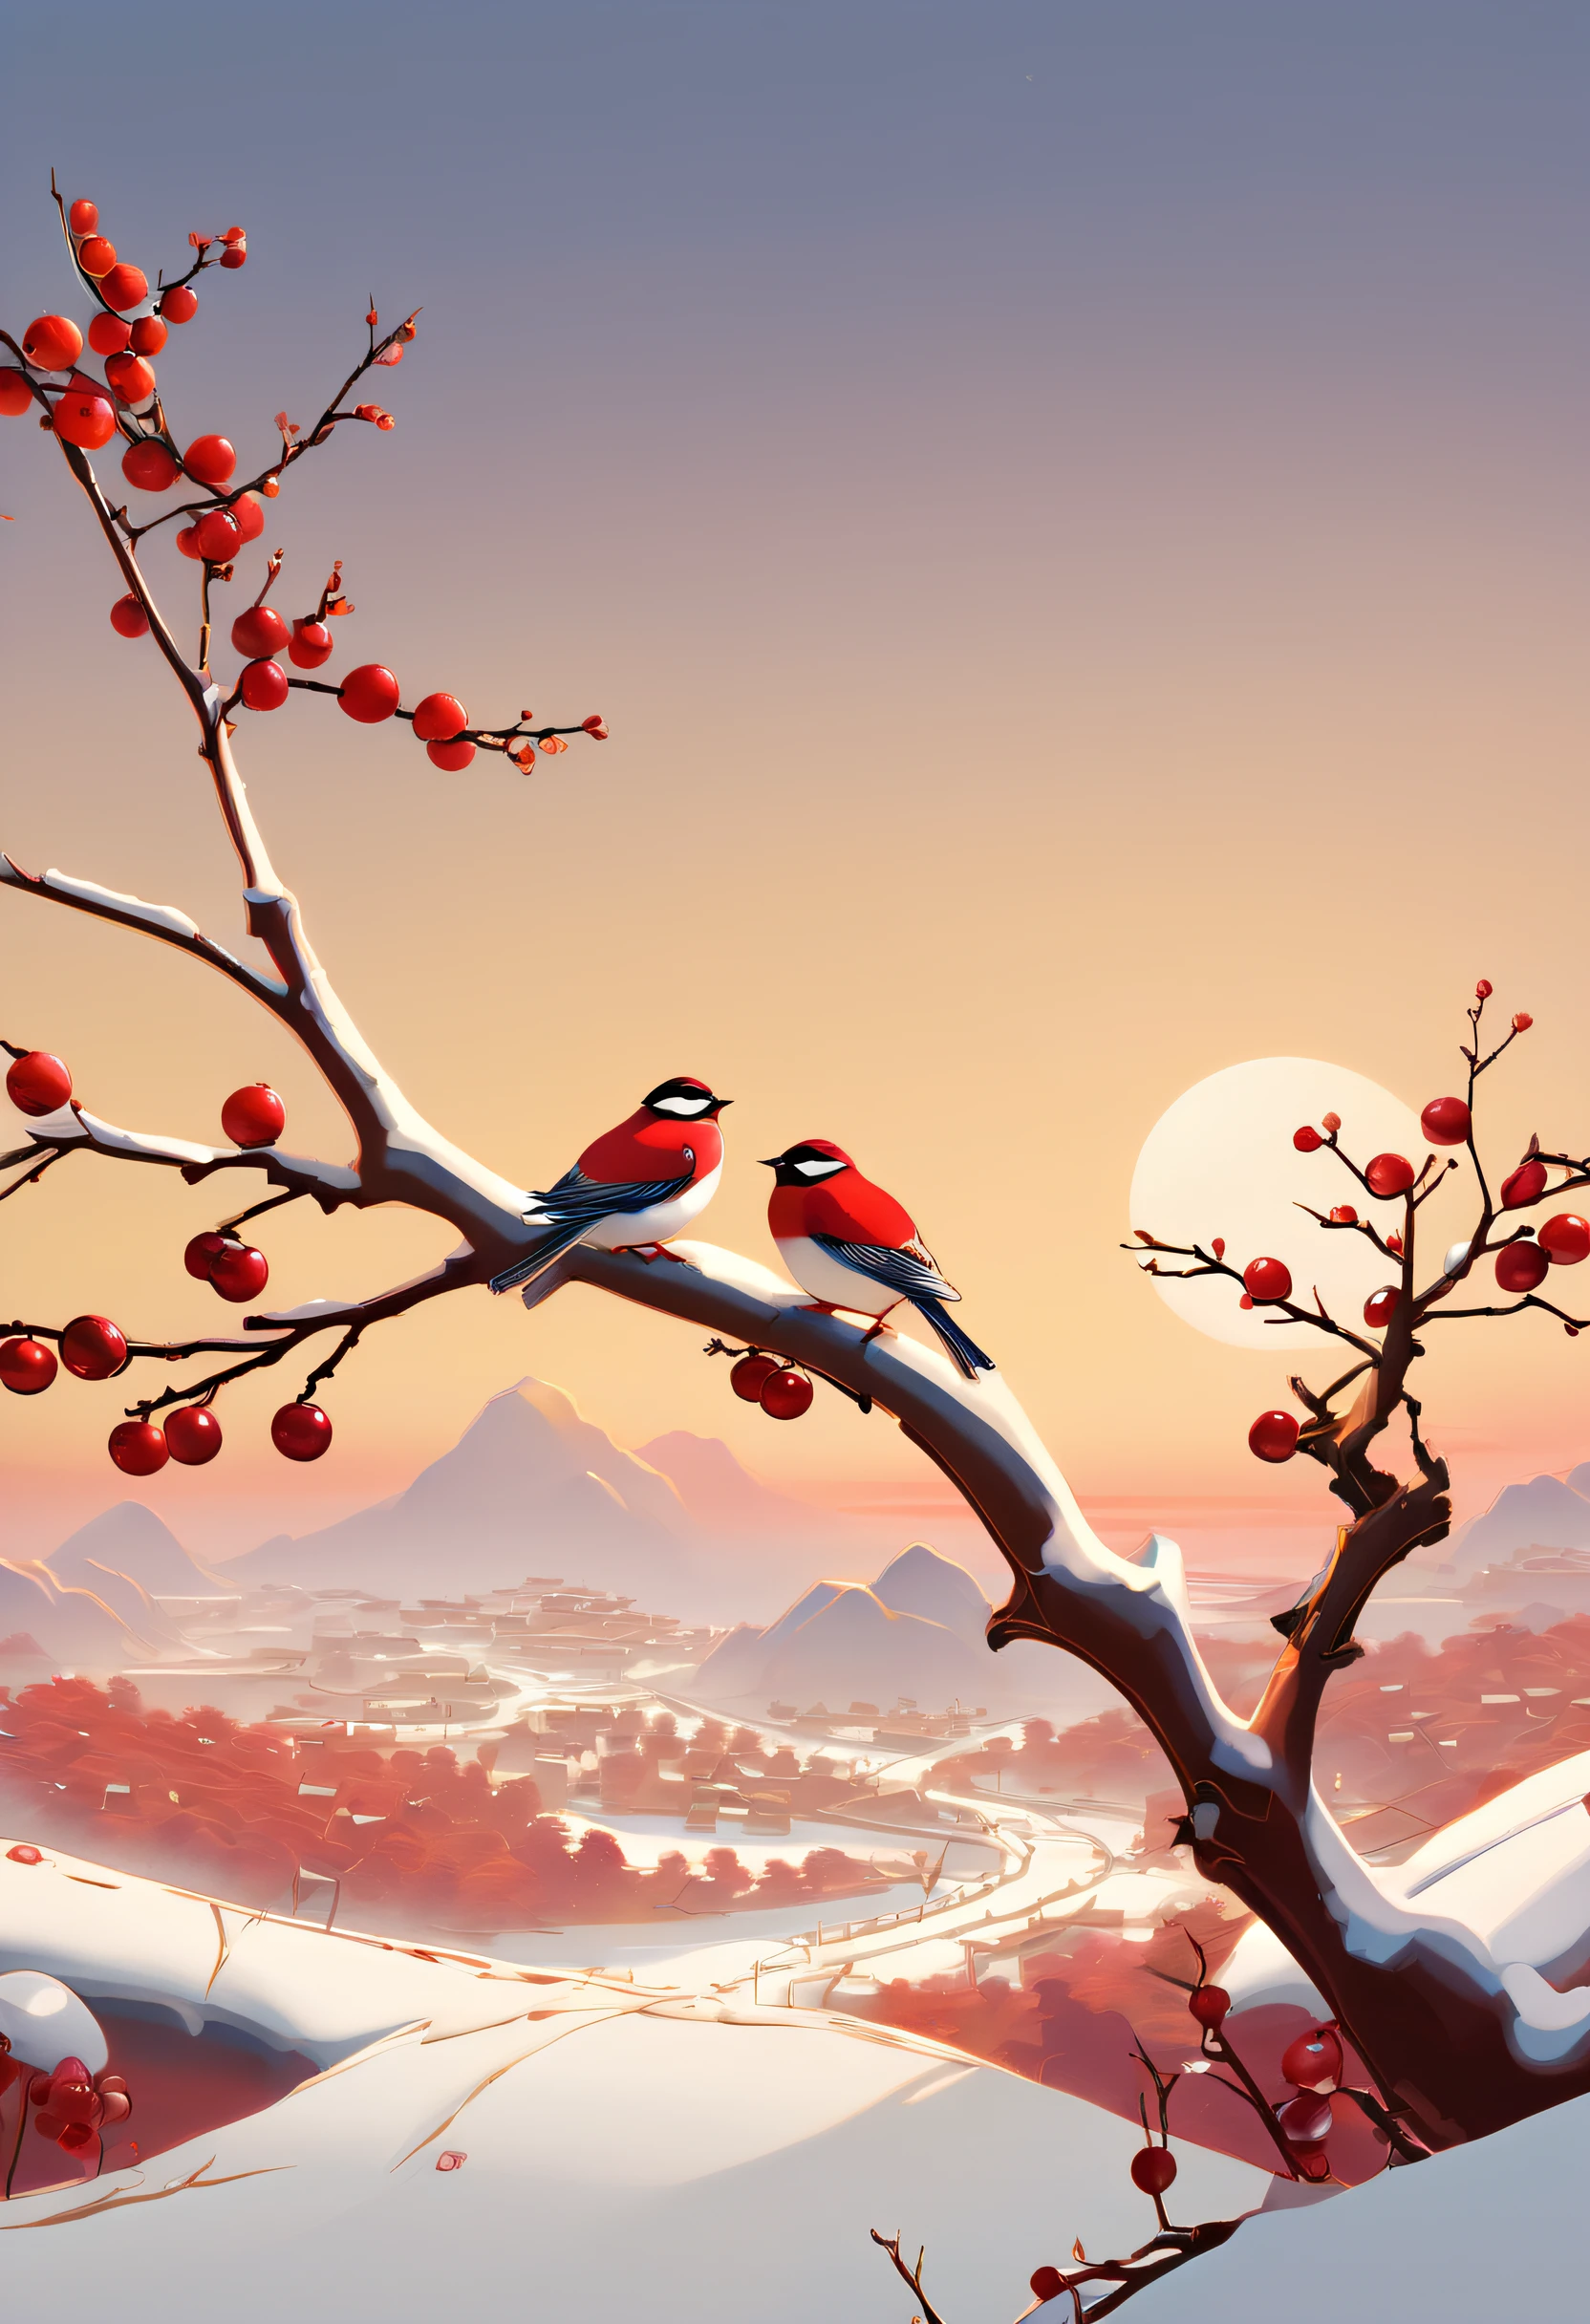 日没近くの枝に2羽の鳥が止まっている, 2Dゲームアートのスタイル, 青島千穂, クランベリーコア, 徐北紅, 雪景色, デジタルアート技法, 有機的な生物形態，国峰，中国風